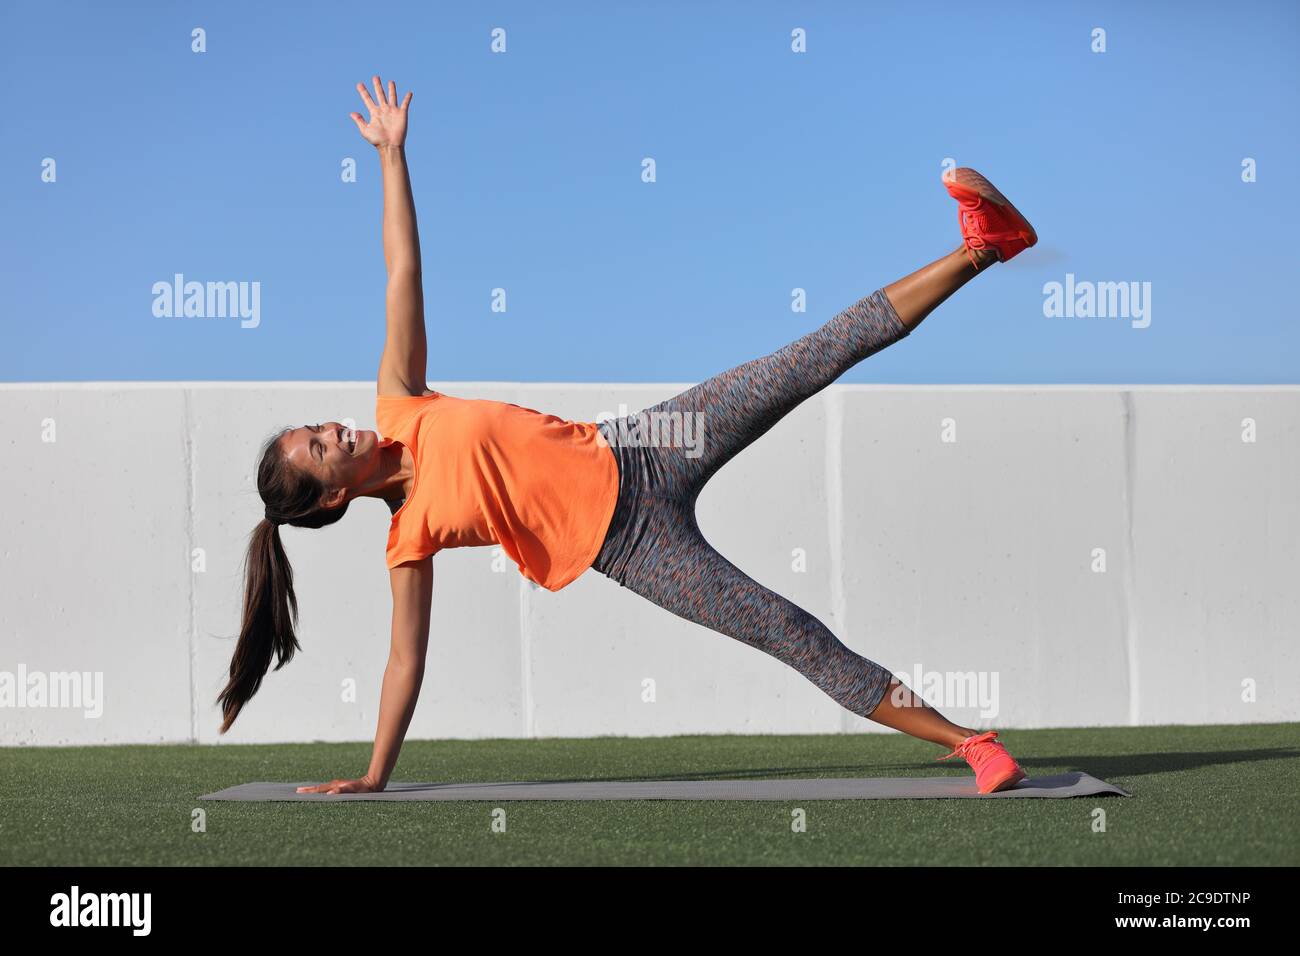 https://c8.alamy.com/compes/2c9dtnp/plancha-lateral-de-estrellas-yoga-mujer-planking-haciendo-ejercicio-de-base-de-levantamiento-de-piernas-en-la-clase-de-gimnasio-de-fitness-asia-nina-de-entrenamiento-pierna-de-tablon-lateral-levantar-el-nucleo-del-cuerpo-en-yoga-2c9dtnp.jpg